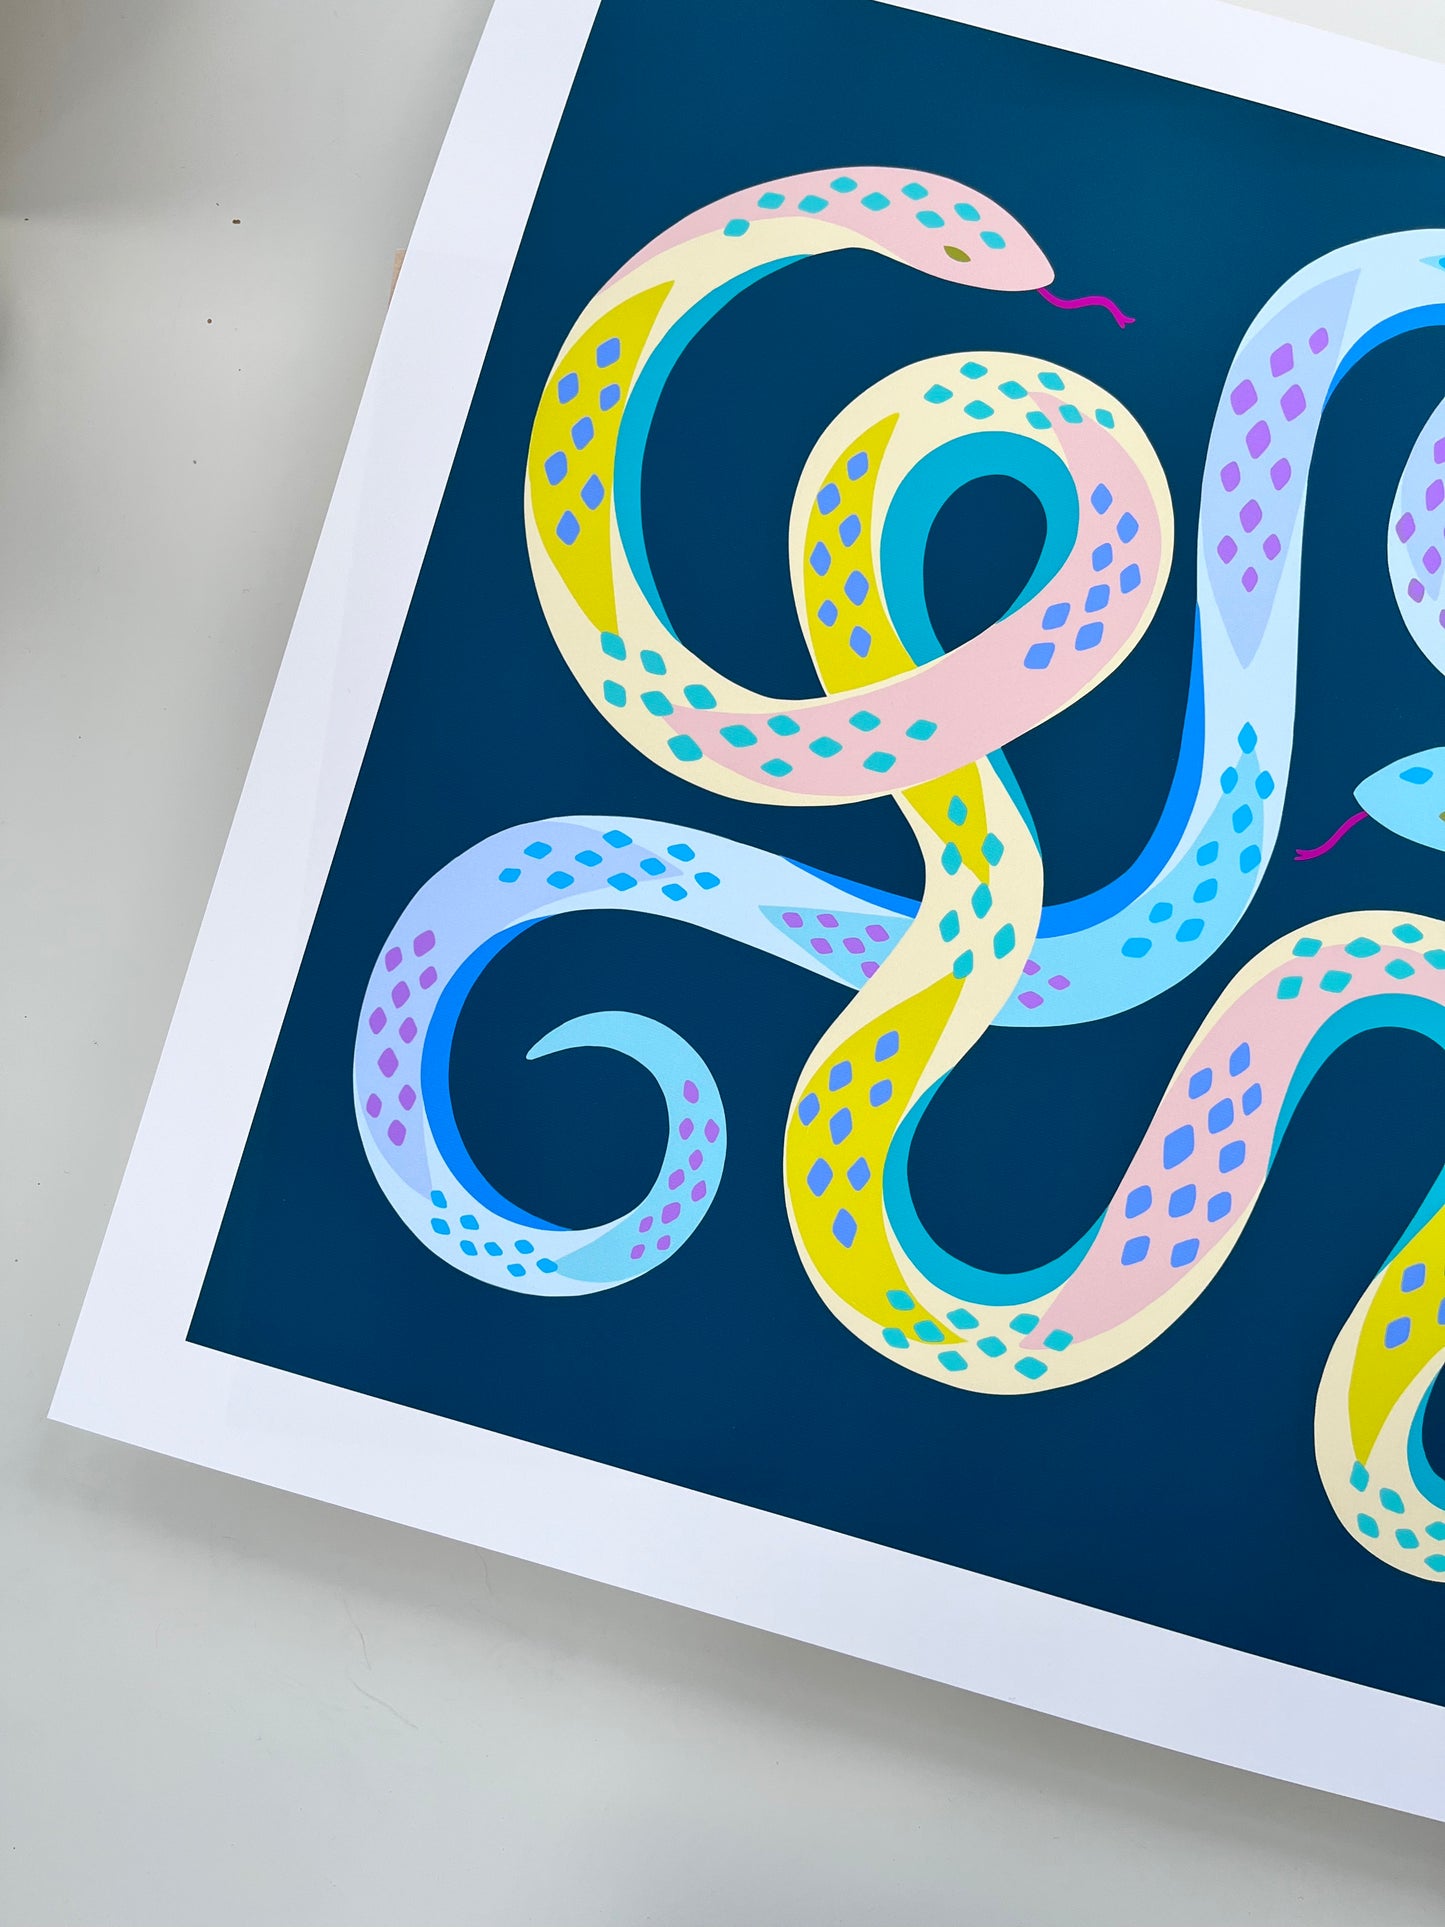 Garden Snakes - Art Print